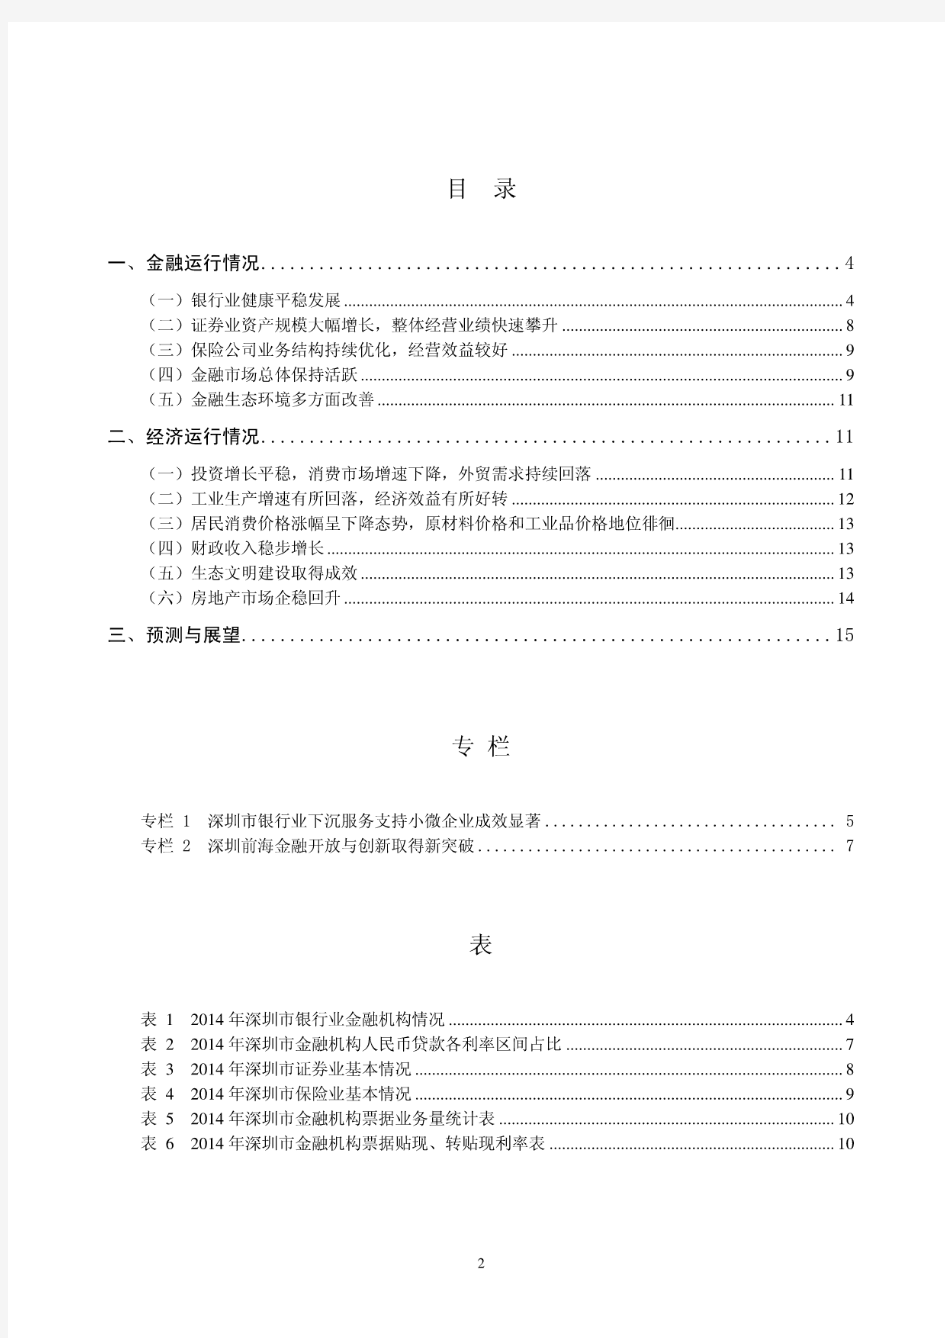 2014年深圳市金融运行报告